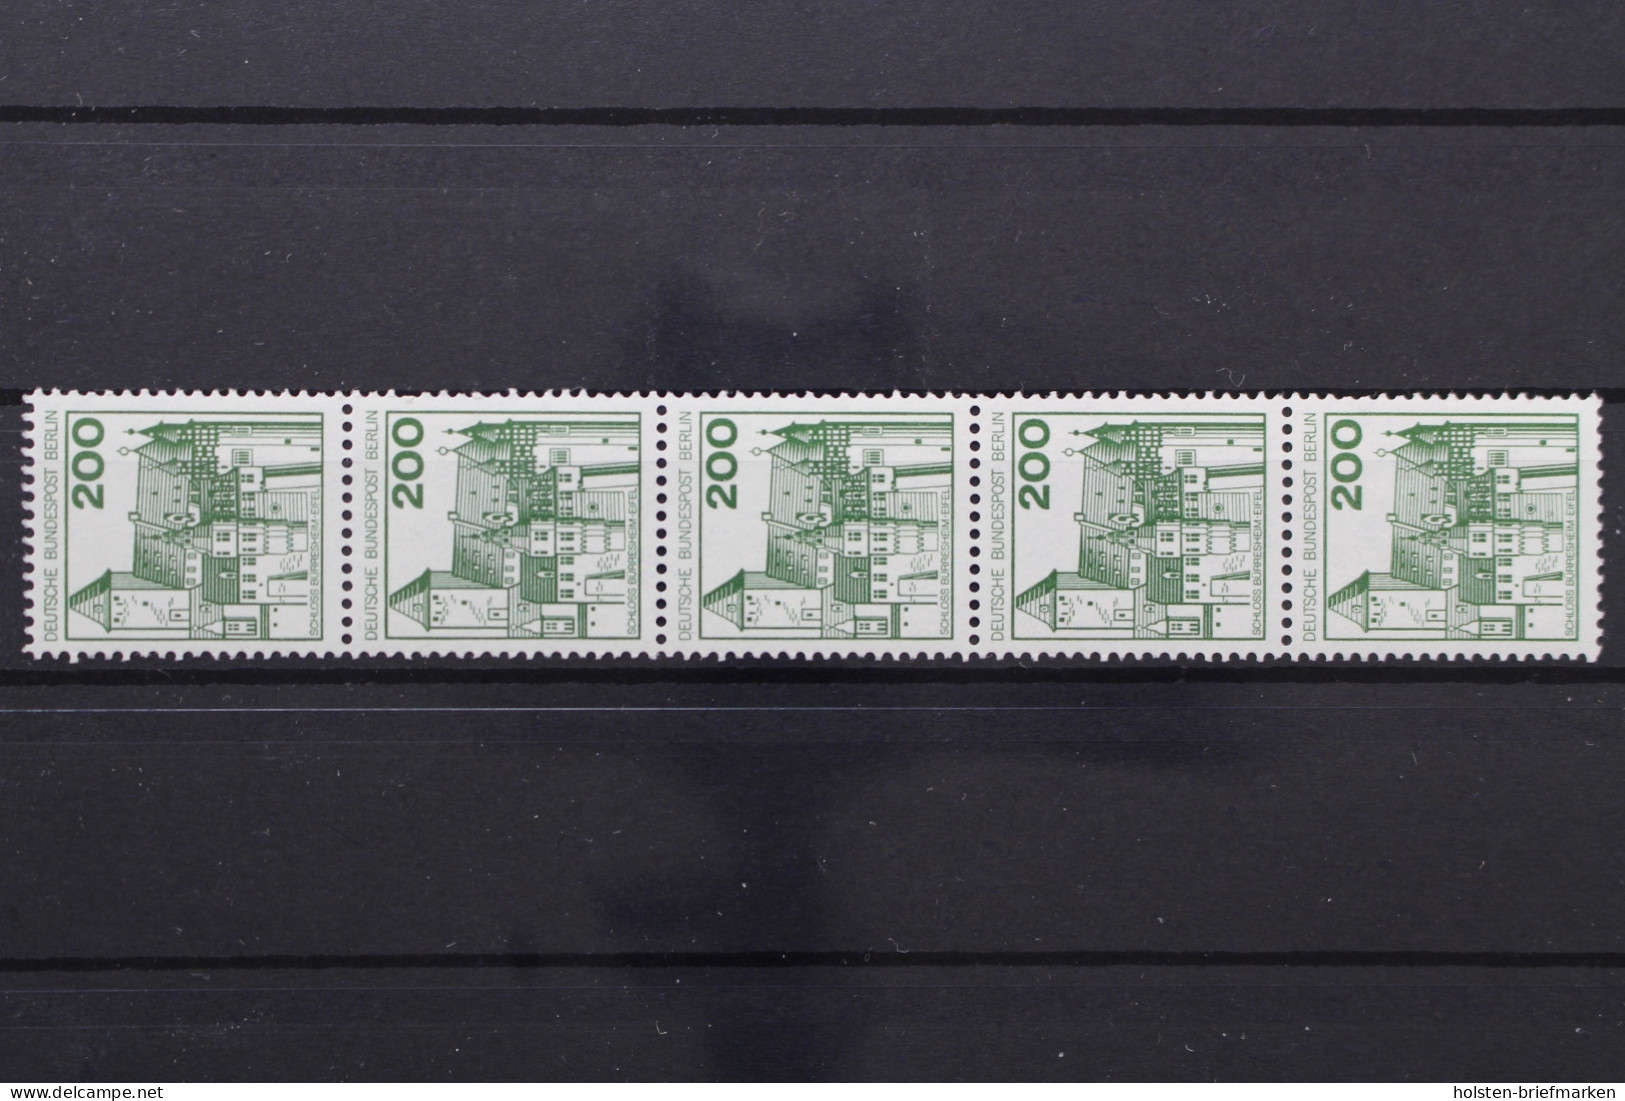 Berlin, MiNr. 540 R, Fünferstreifen Mit ZN 015, Postfrisch - Rollenmarken